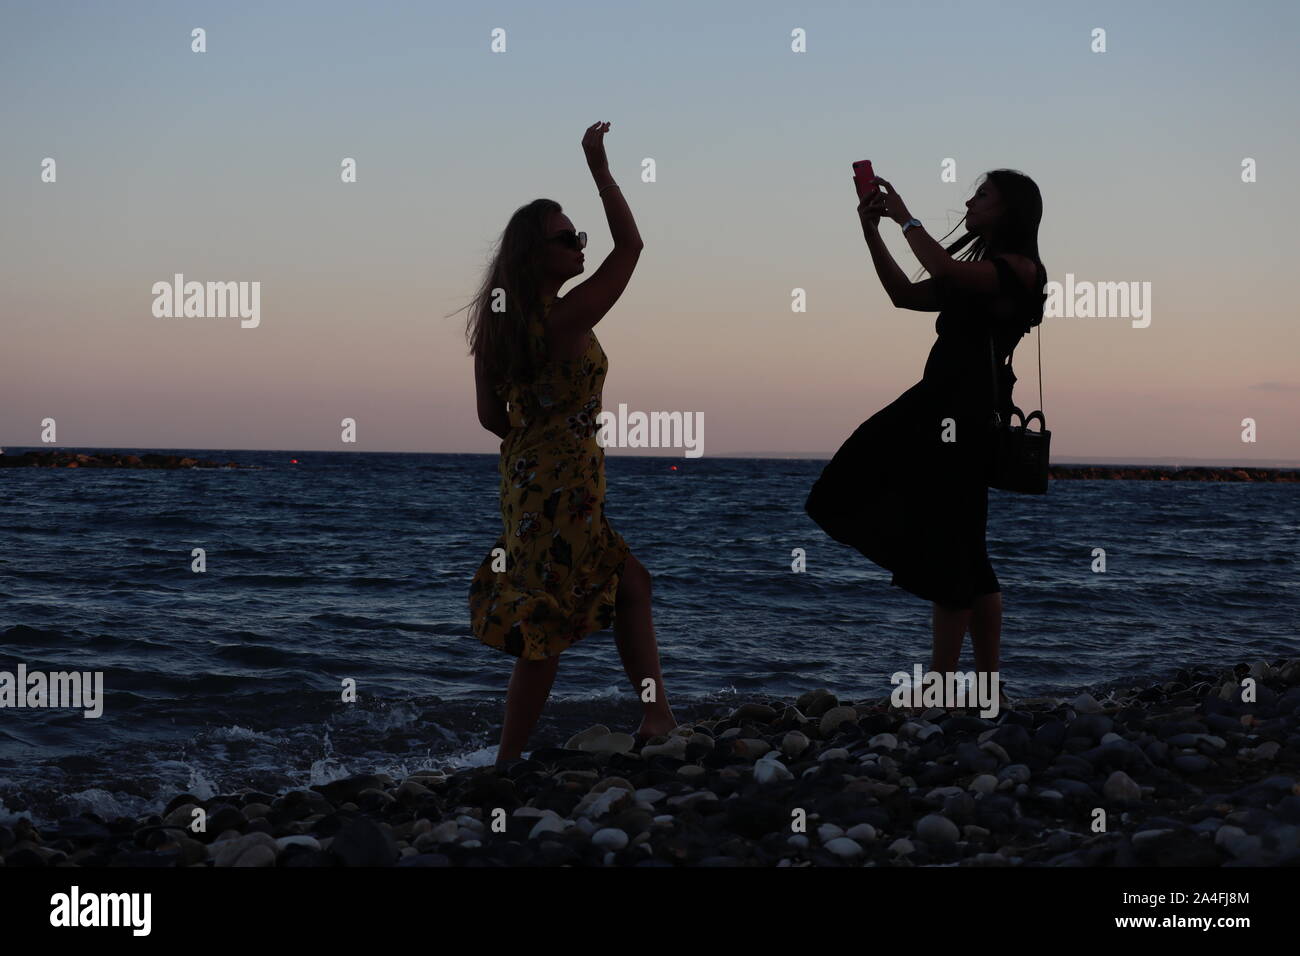 Limassol / Chypre - 15 août 2019 : Deux jeunes filles posent pour des photos à l'aide de smart phone caméra sur windy beach at sunset Banque D'Images